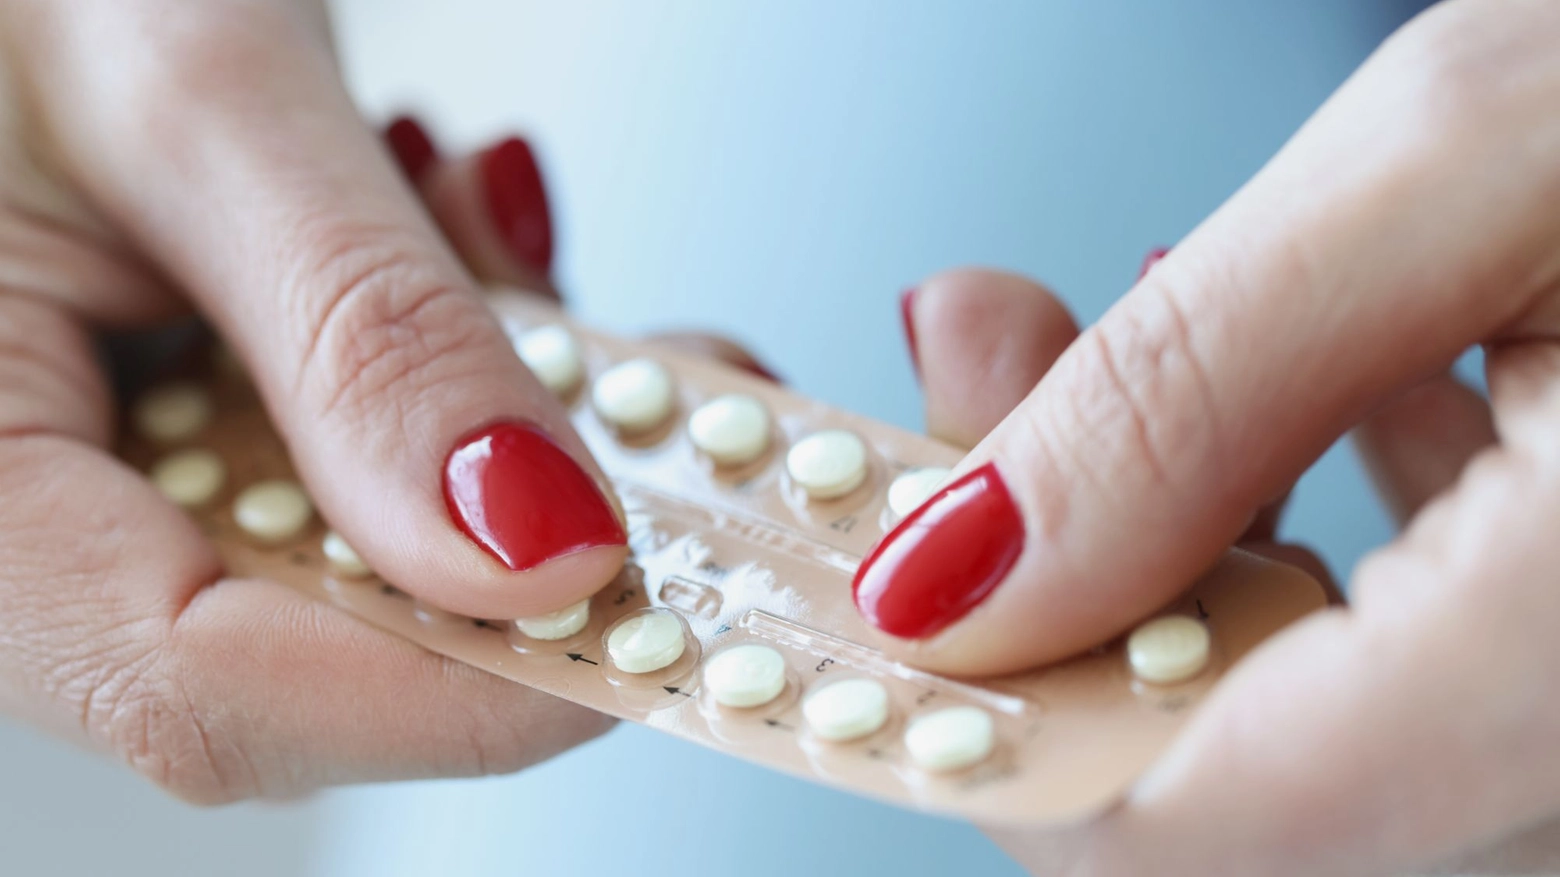 Pillola anticoncezionale gratuita per tutte le donne: da quando in Emilia Romagna